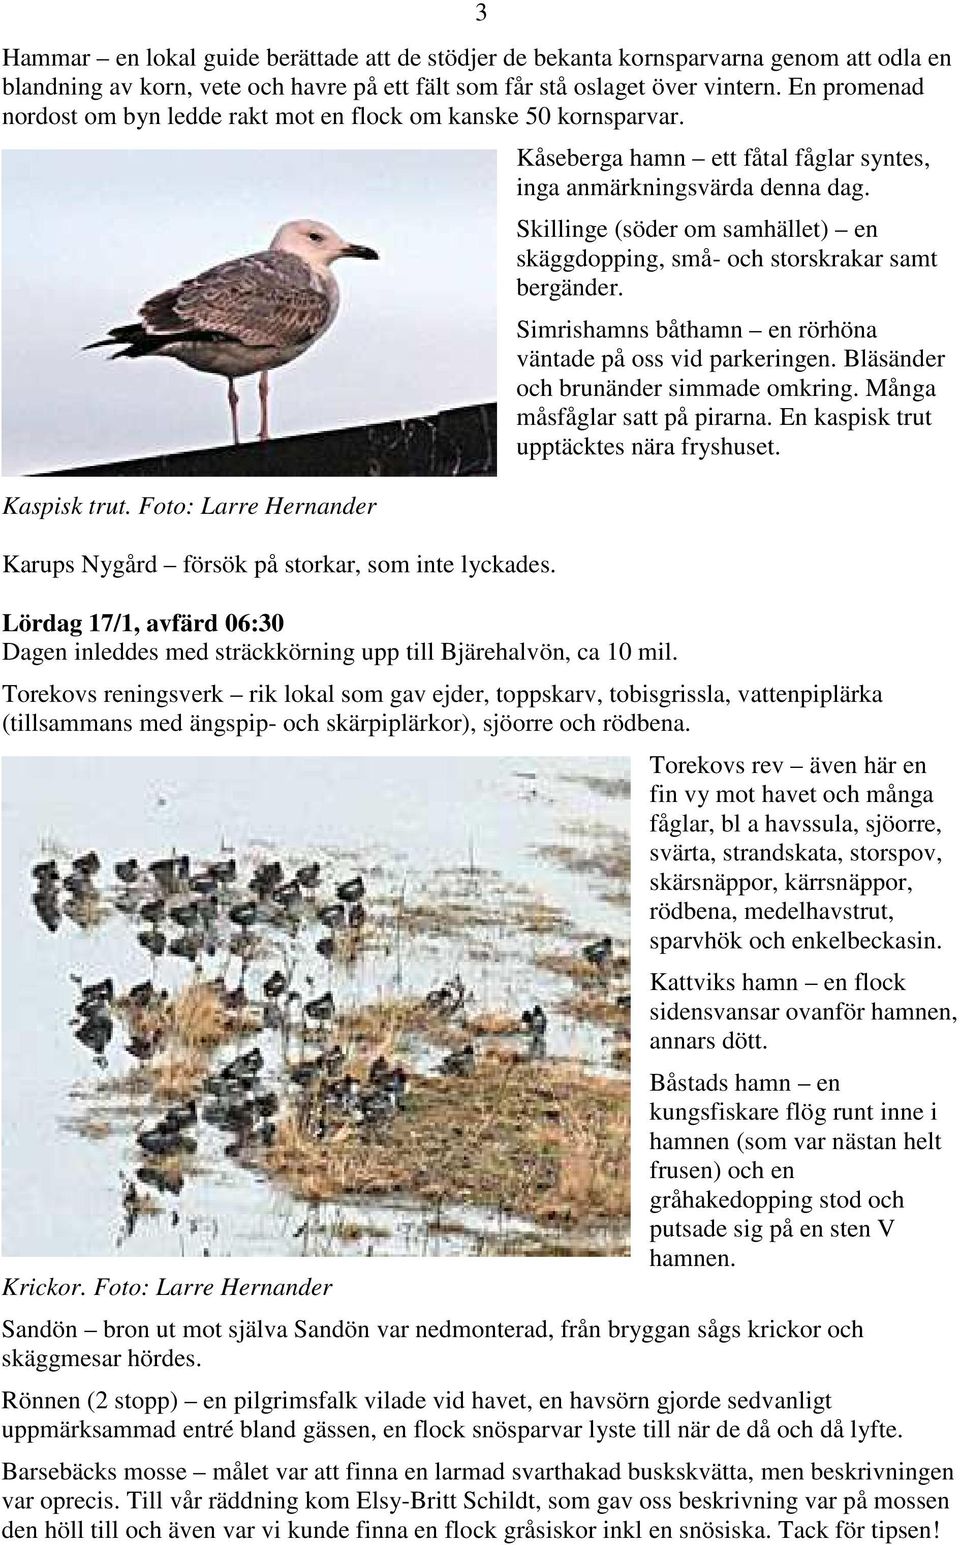 Lördag 17/1, avfärd 06:30 Dagen inleddes med sträckkörning upp till Bjärehalvön, ca 10 mil. Kåseberga hamn ett fåtal fåglar syntes, inga anmärkningsvärda denna dag.